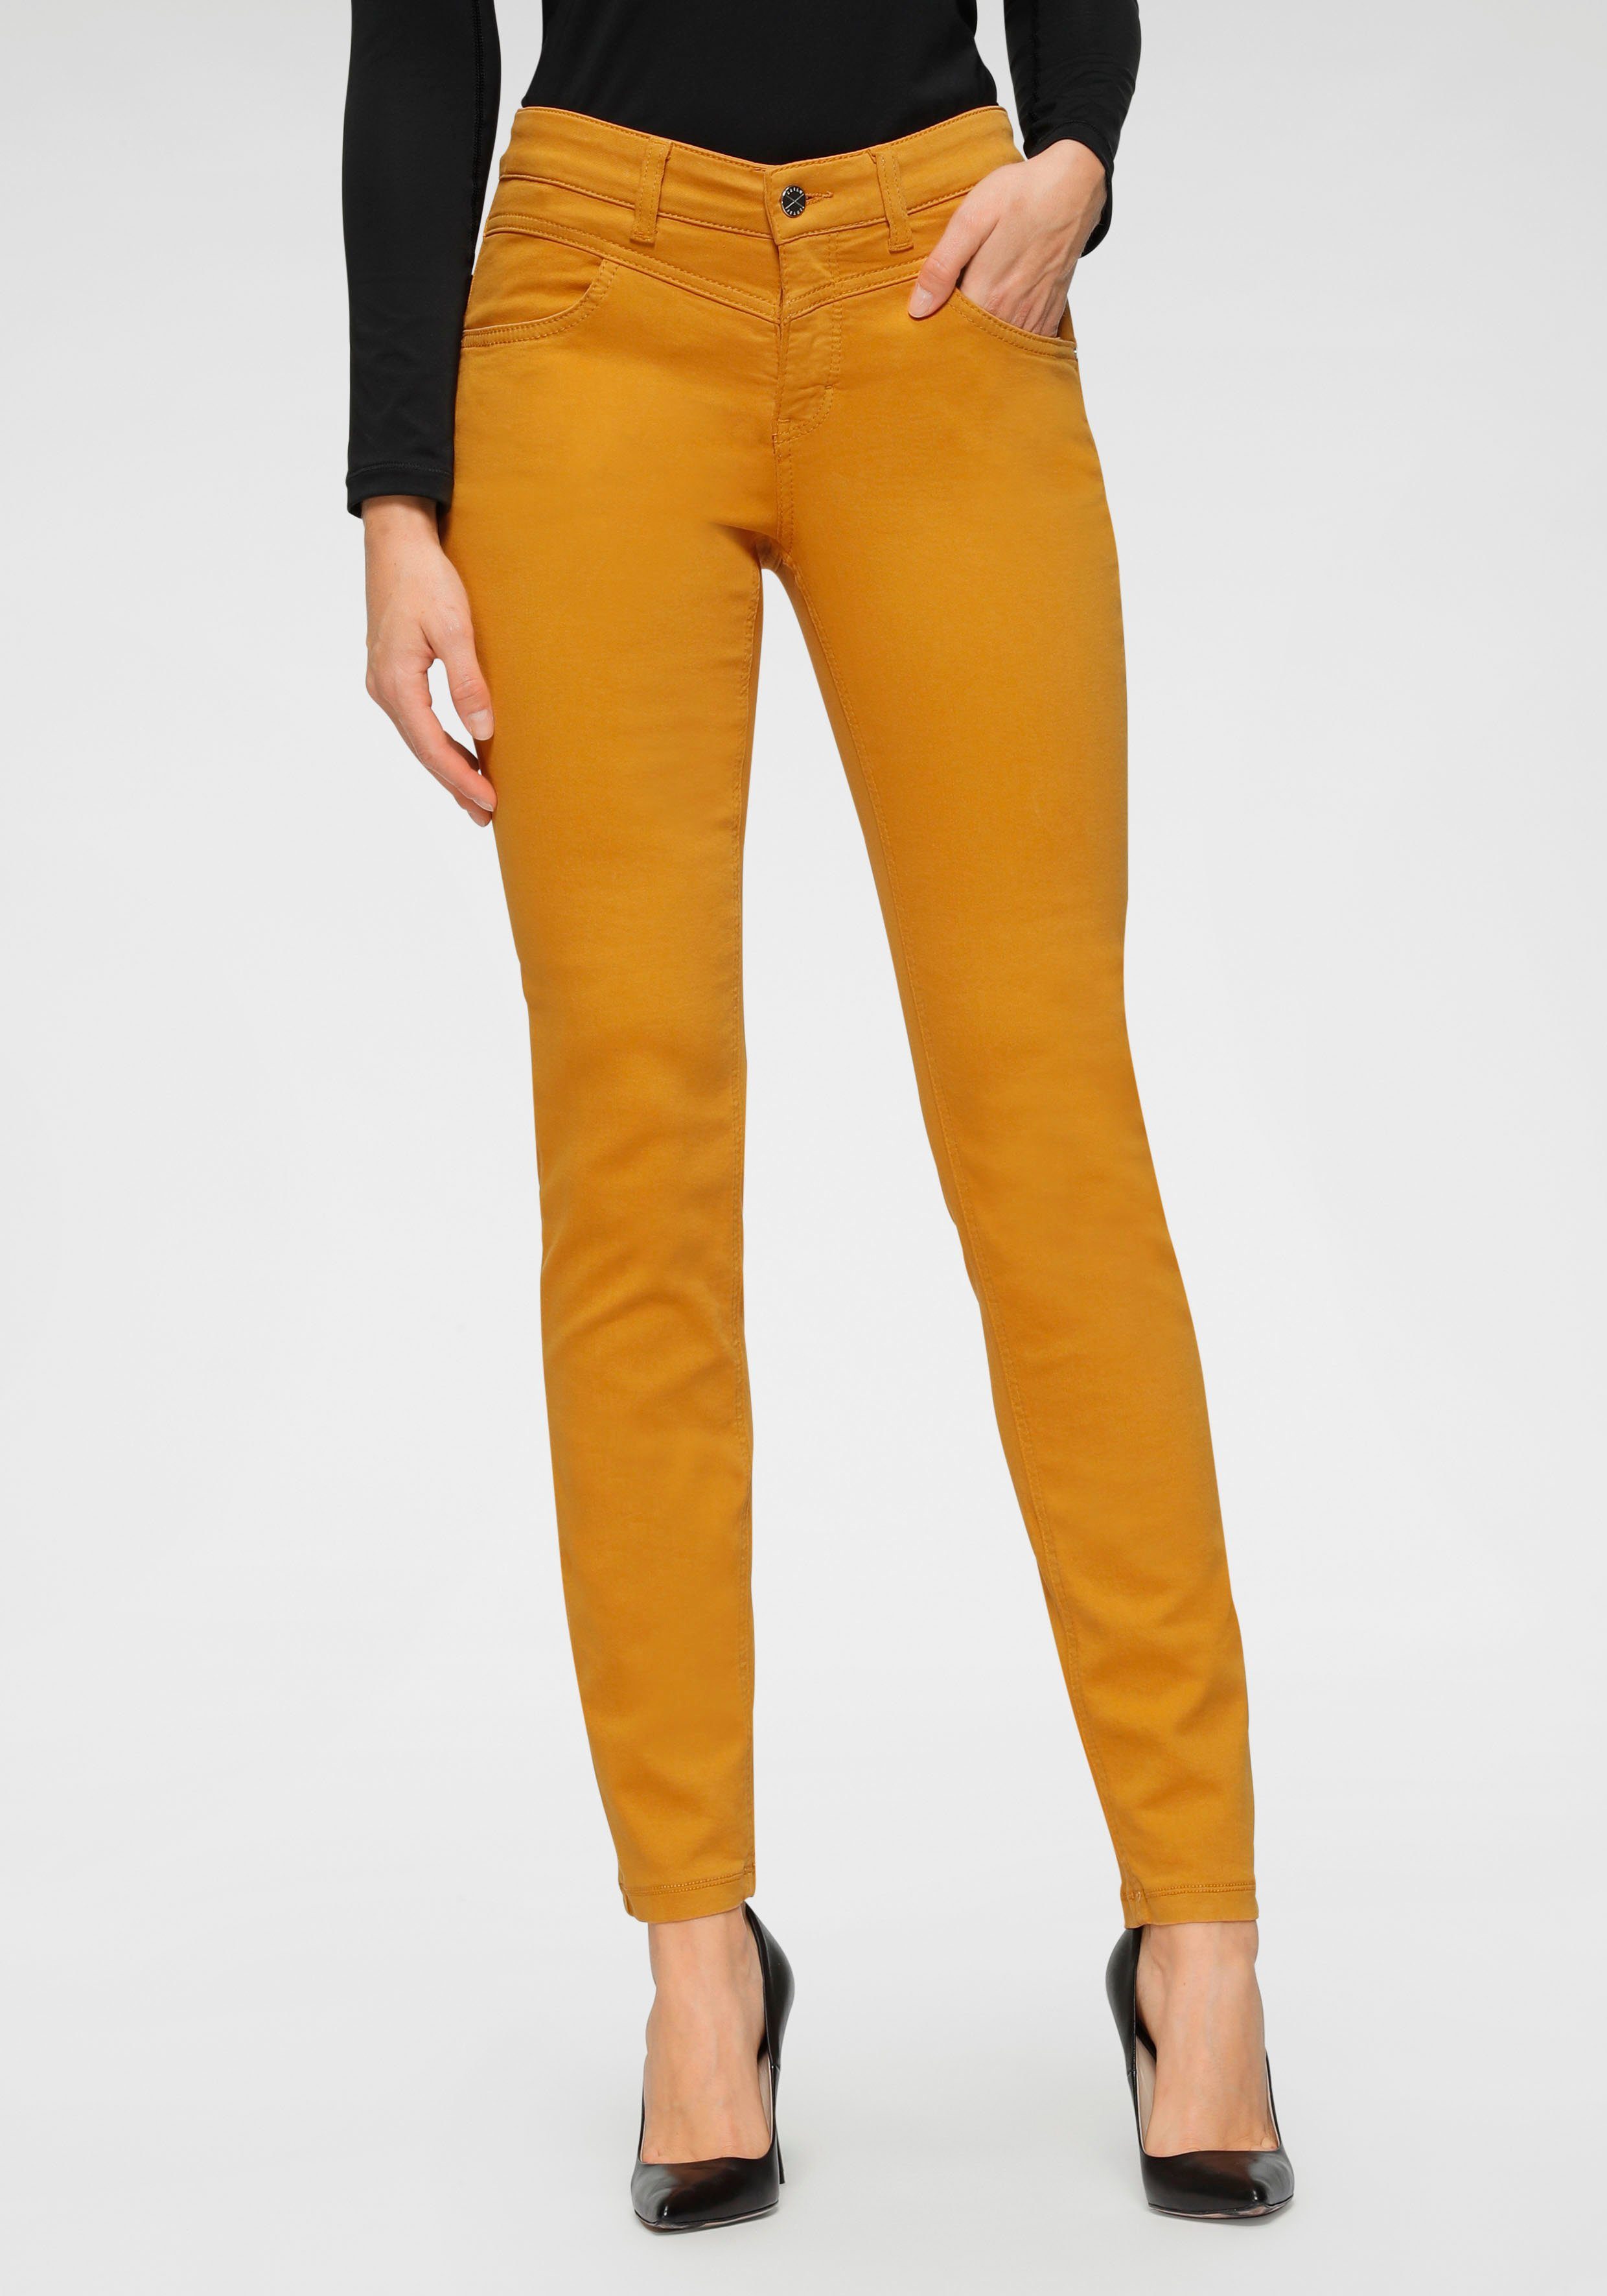 Gelbe Jeans online kaufen | OTTO